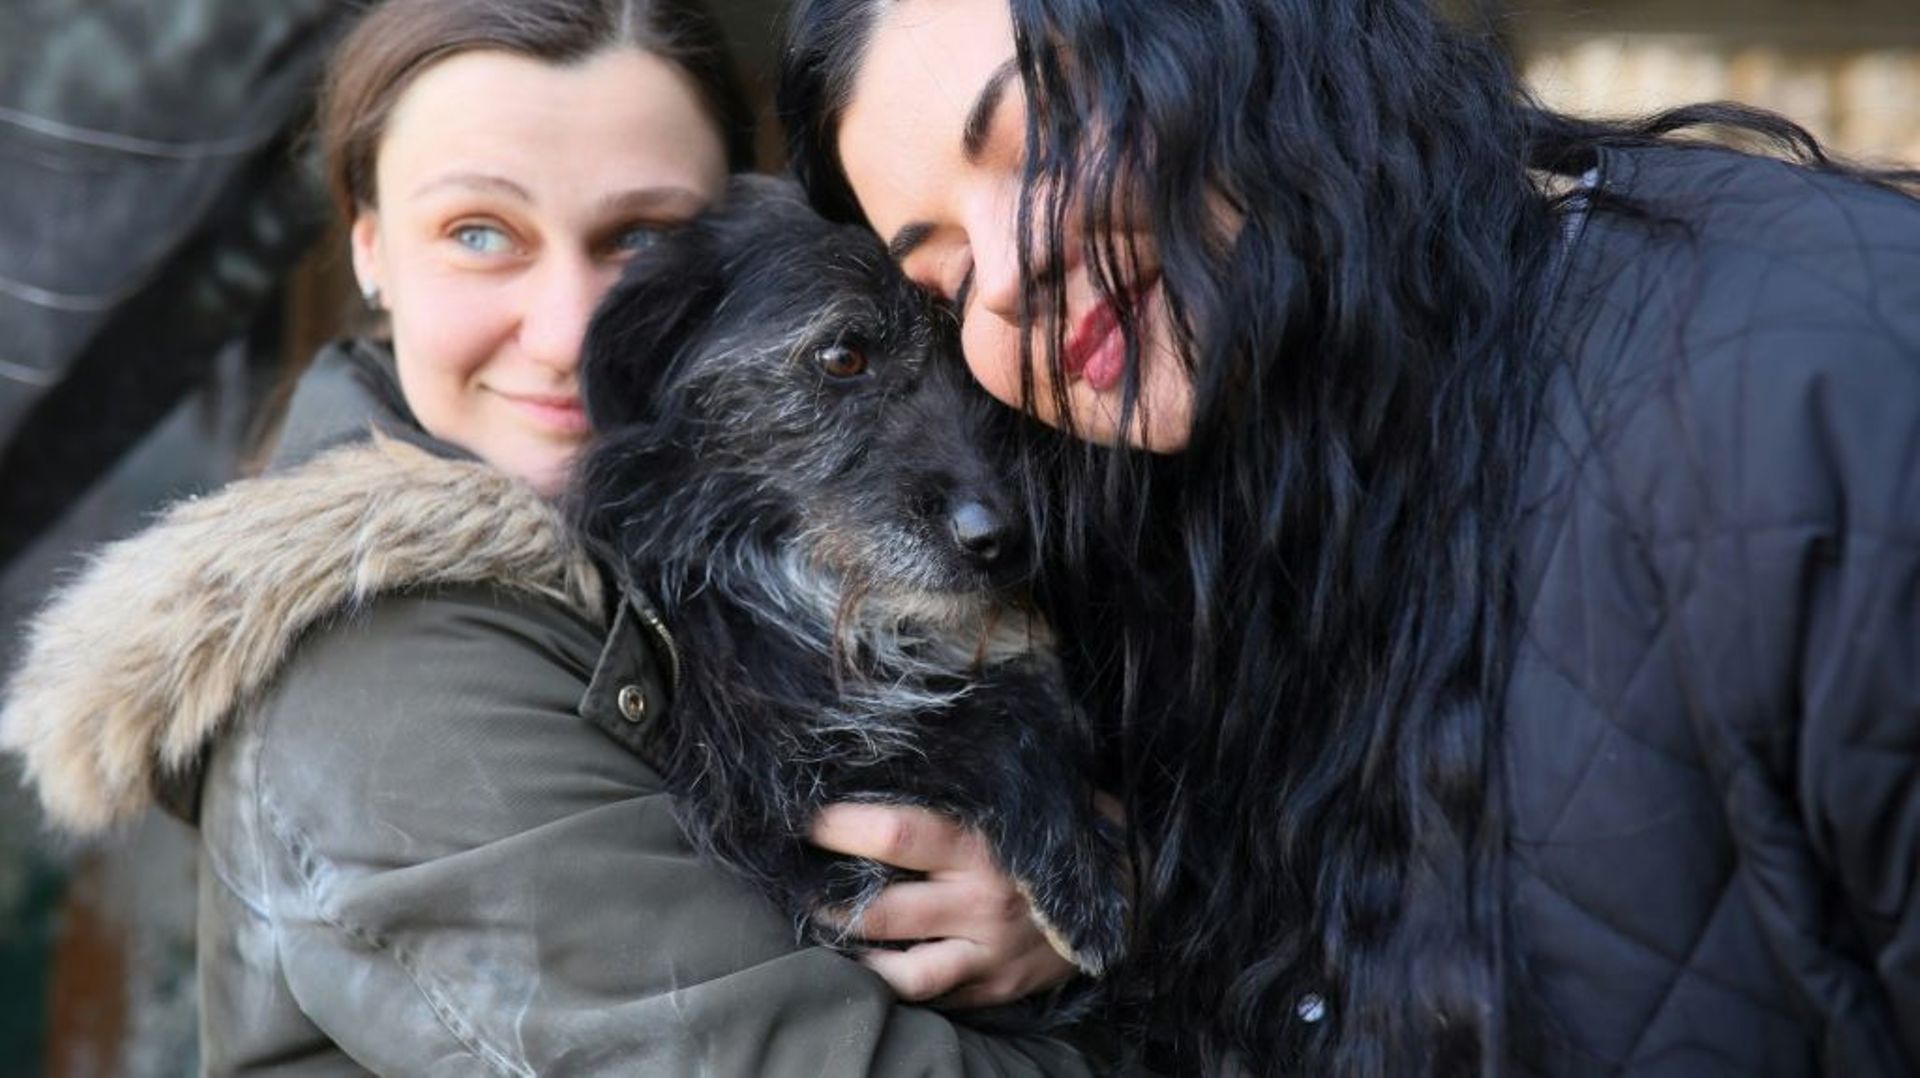 Des femmes câlinent un chien dans un refuge pour animaux de Lviv, le 26 mars 2022 en Ukraine